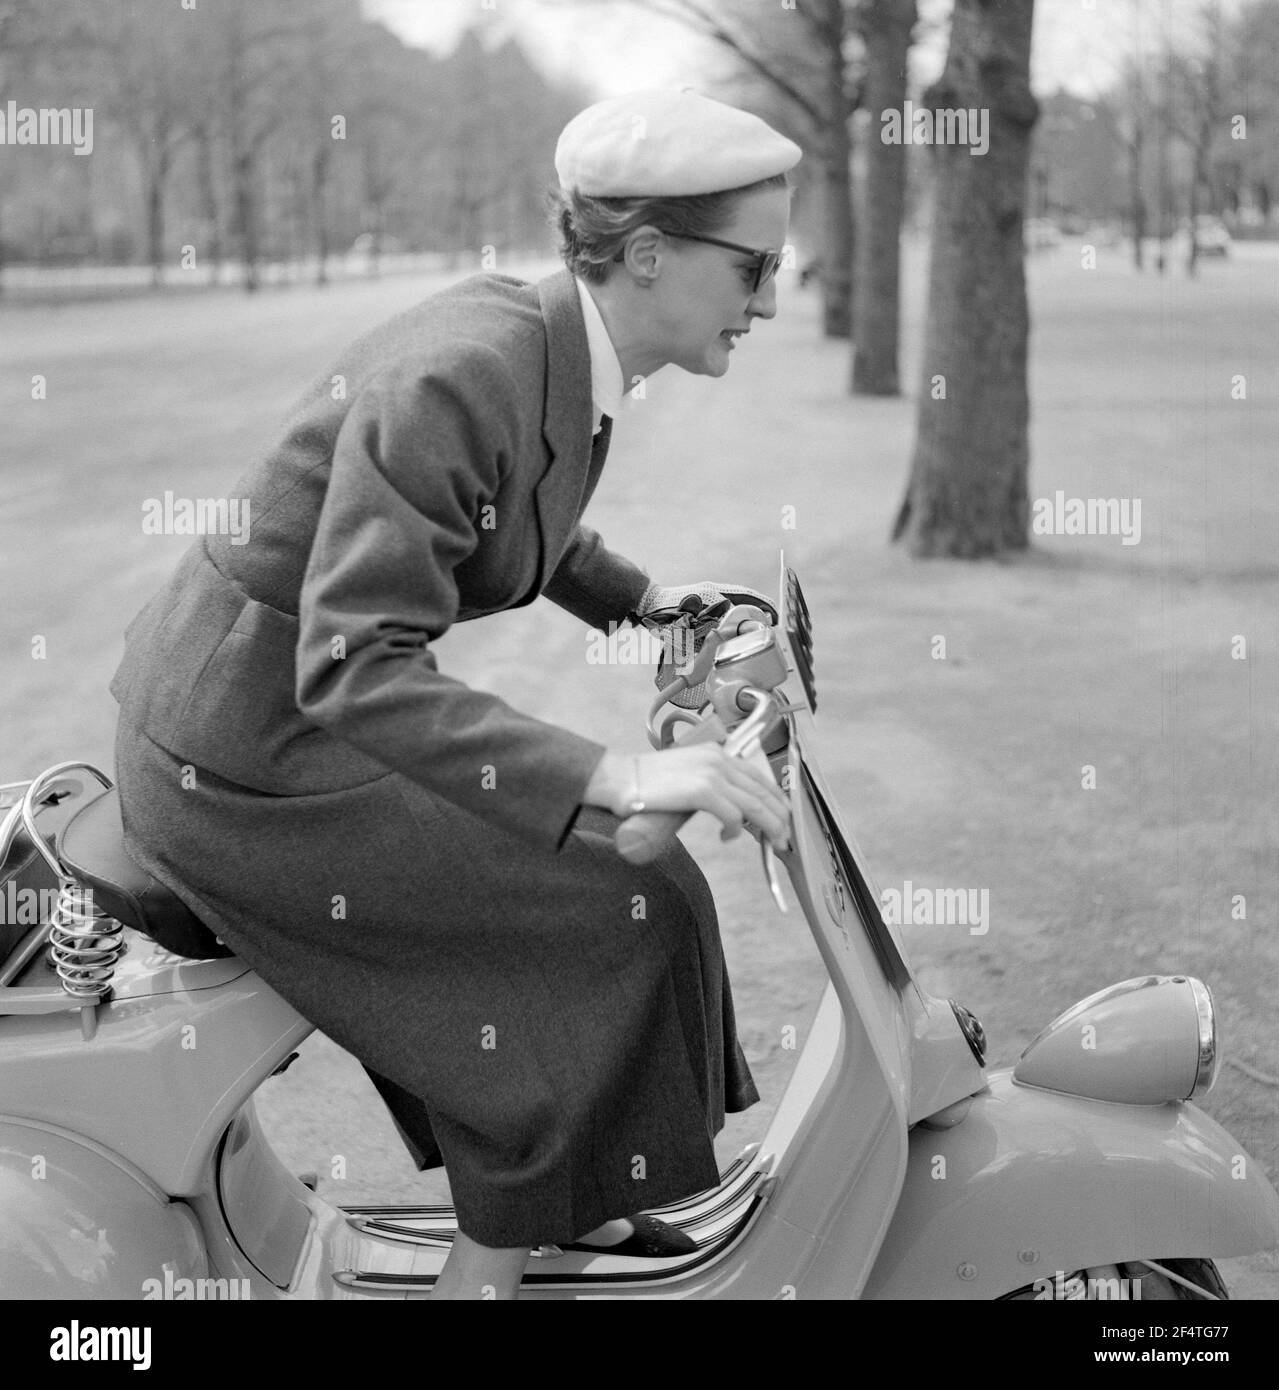 Vespa. Une marque italienne de scooter fabriqué par Piaggio. Le 23 avril 1946, Piaggio & C. S.p.A. a déposé un brevet pour "un cycle moteur avec un complexe rationnel d'organes et d'éléments avec corps combiné avec les garde-boue et le capot couvrant toutes les pièces mécaniques". Peu de temps après, la Vespa a fait sa première apparition publique. Suède 1955. Banque D'Images